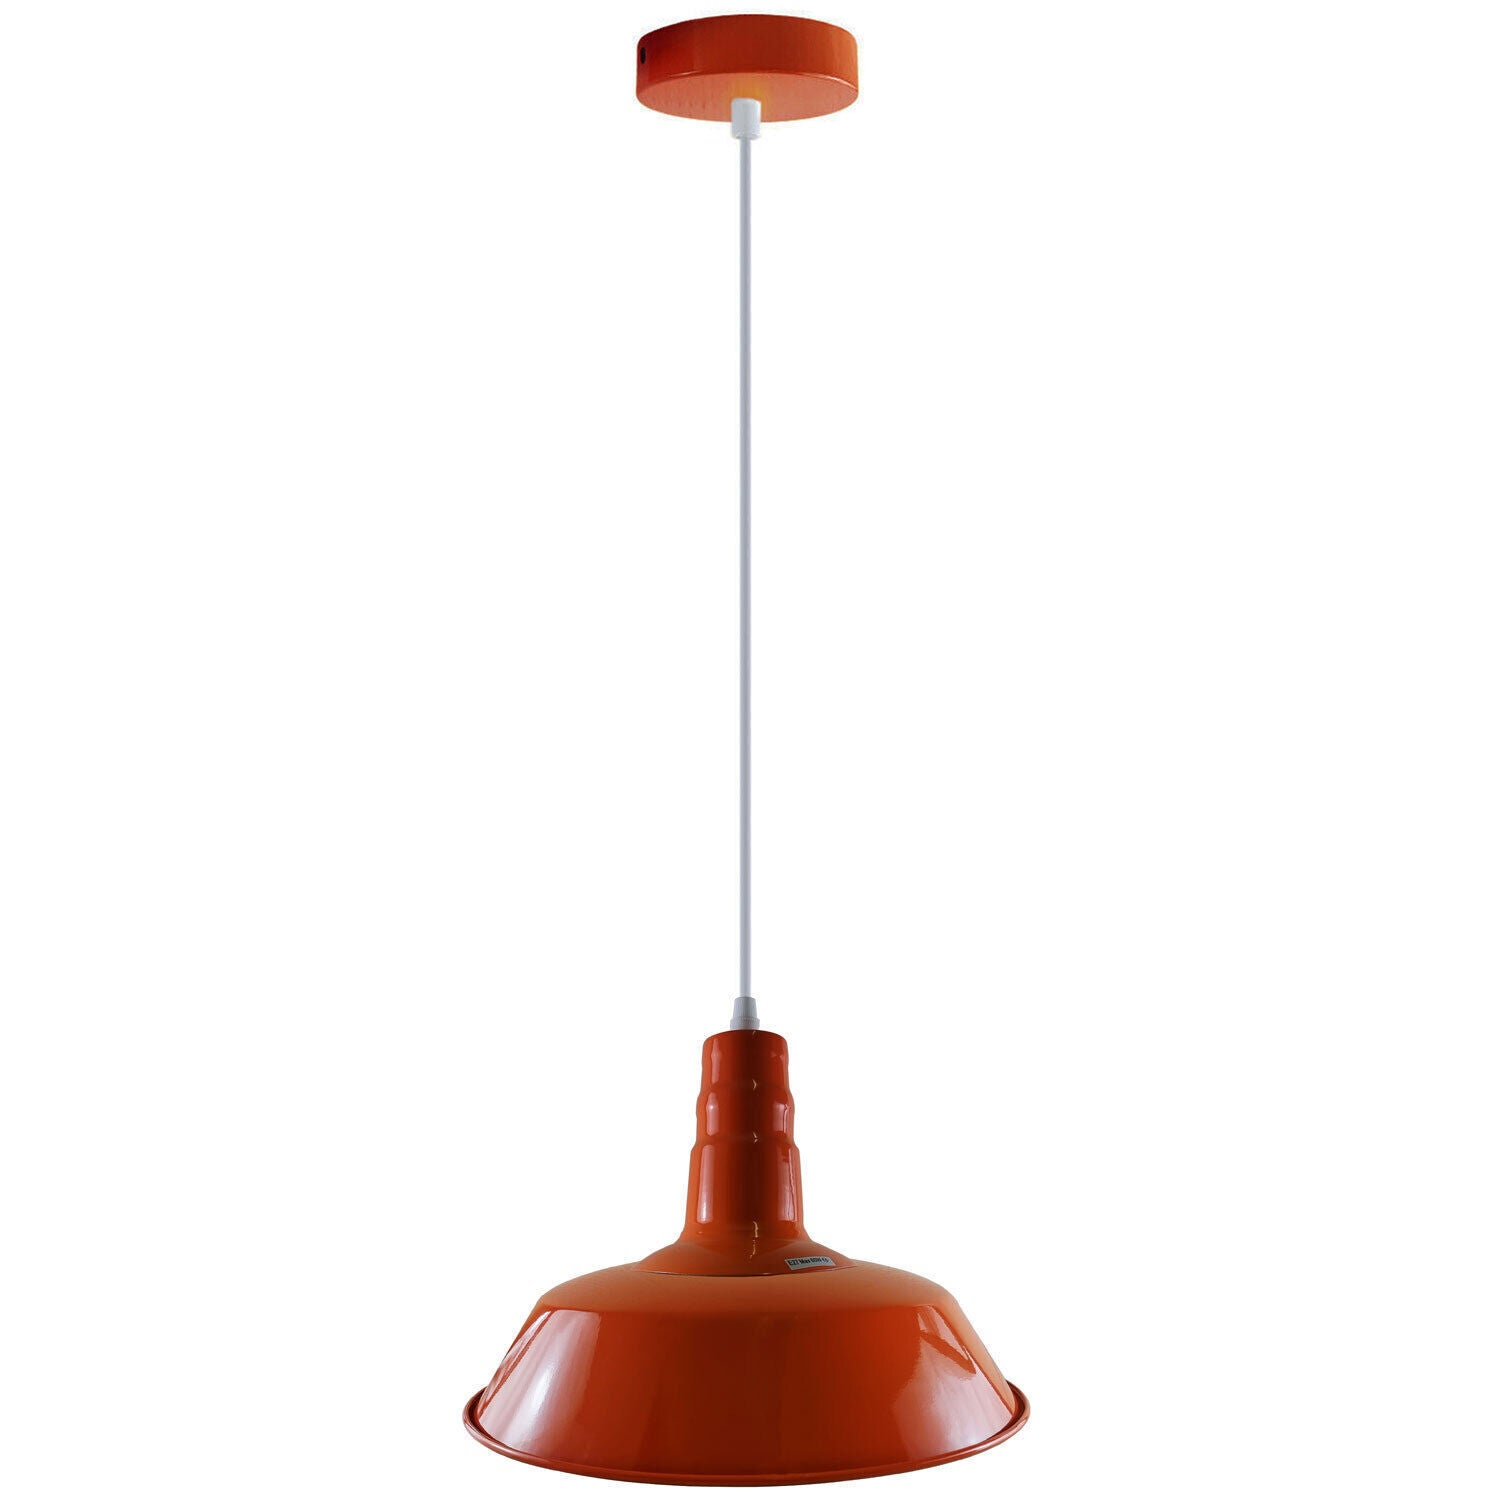 Modern orange ceiling pendant light - hanging light